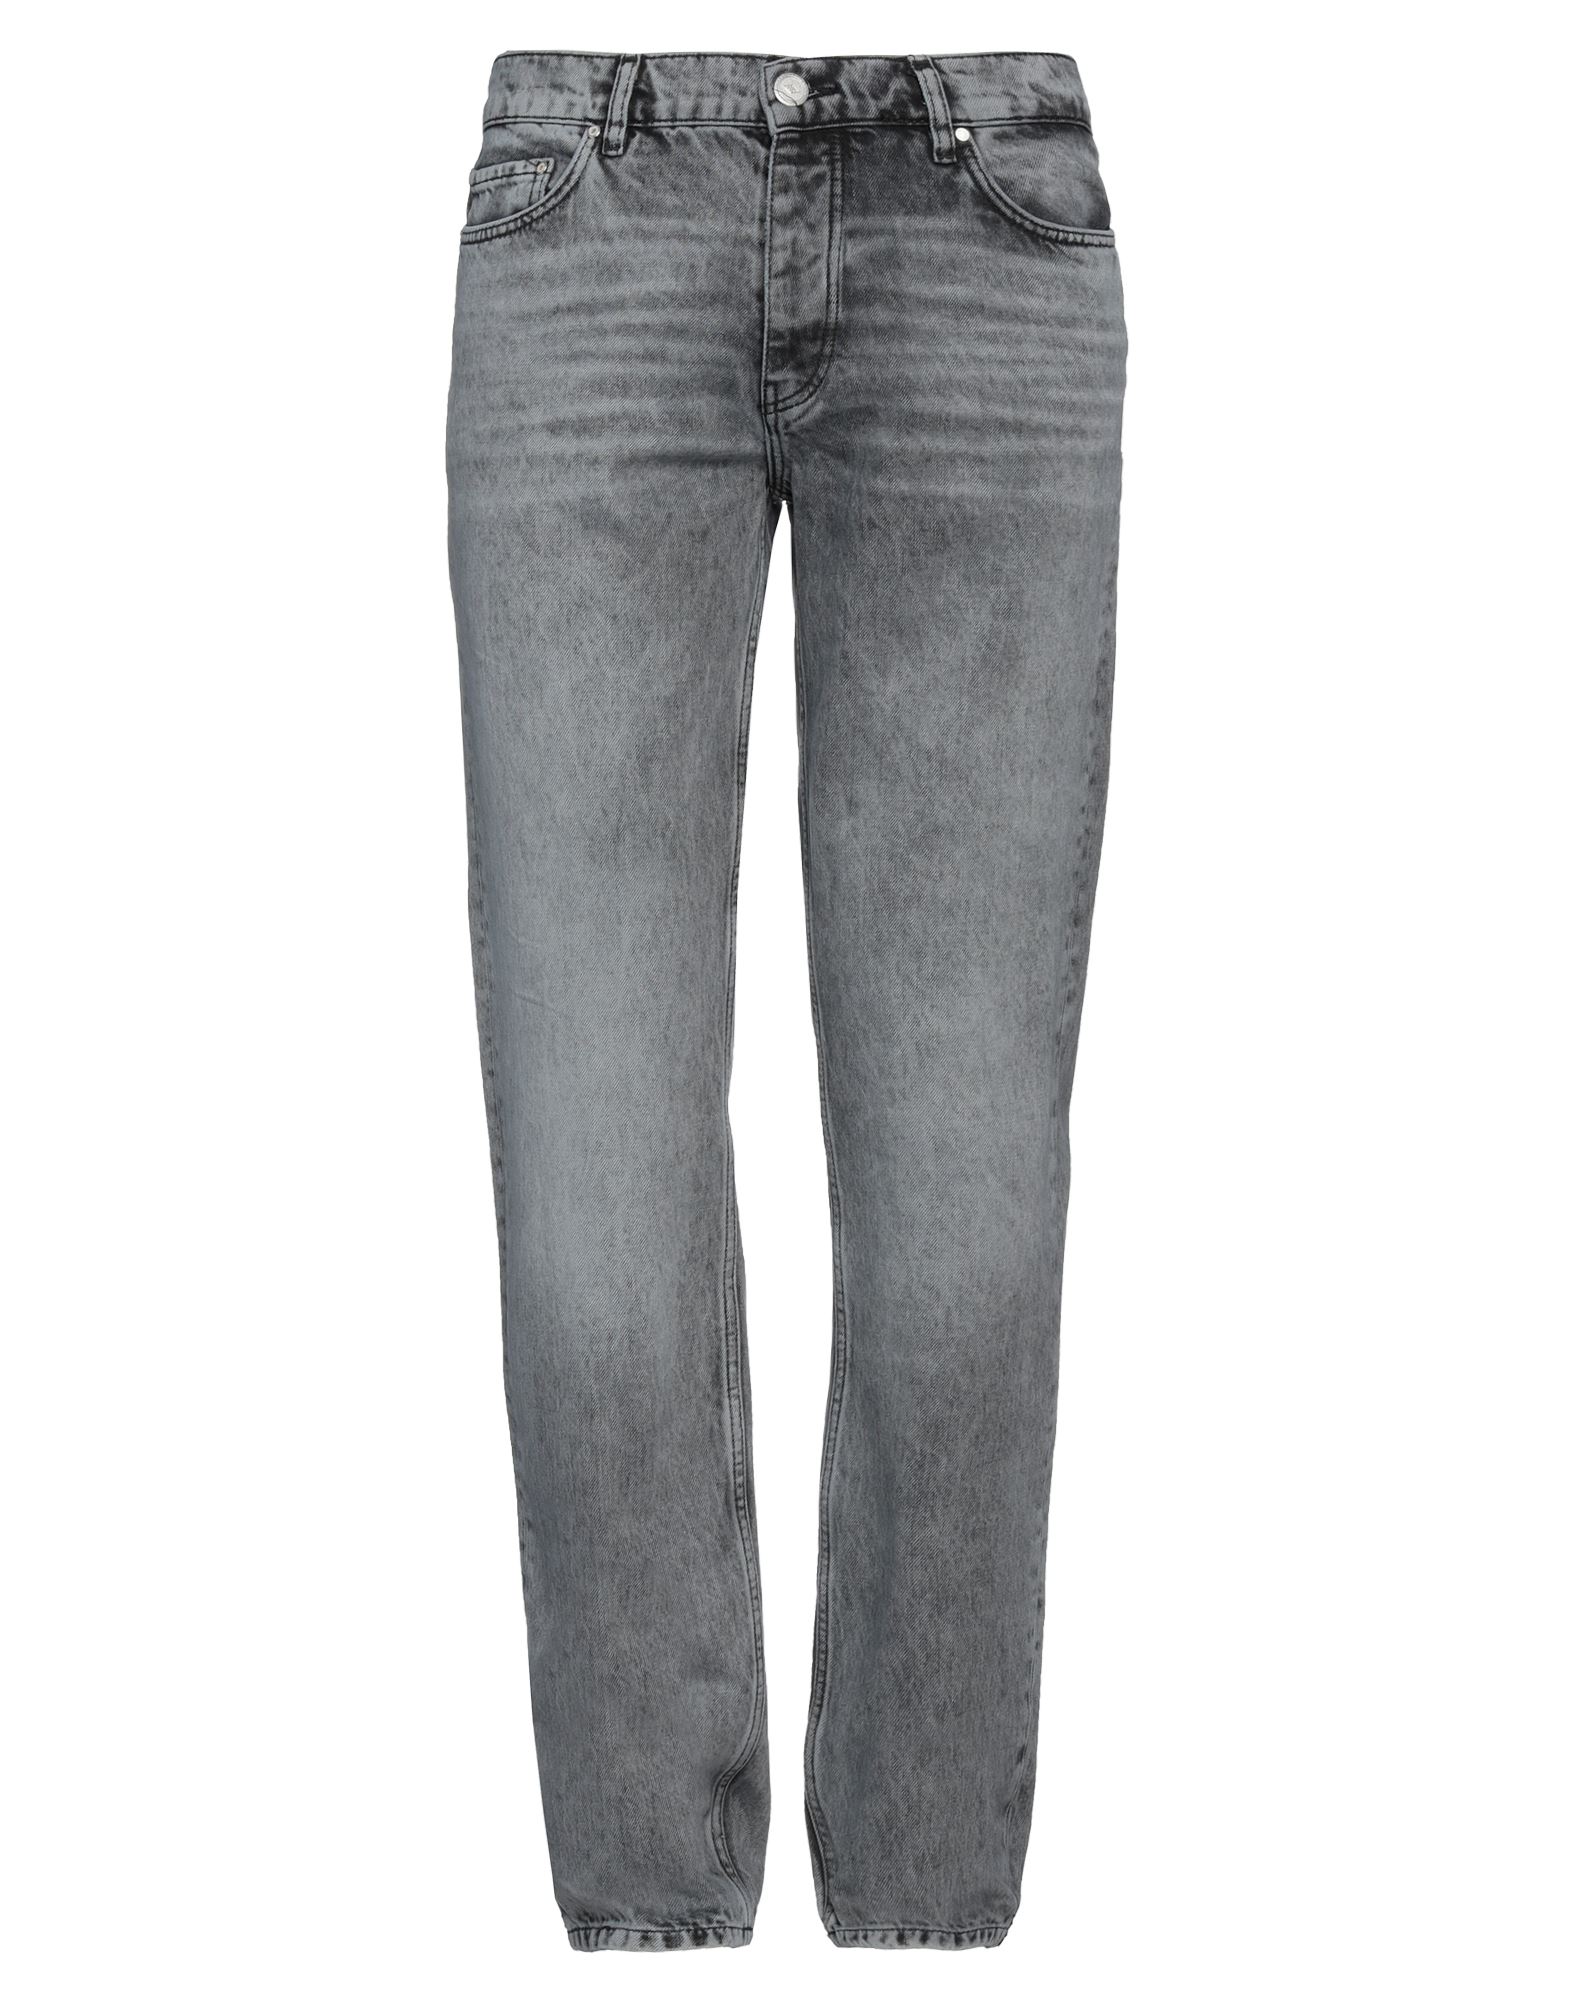 Shop Han Kjobenhavn Han Kjøbenhavn Man Jeans Grey Size 33 Cotton